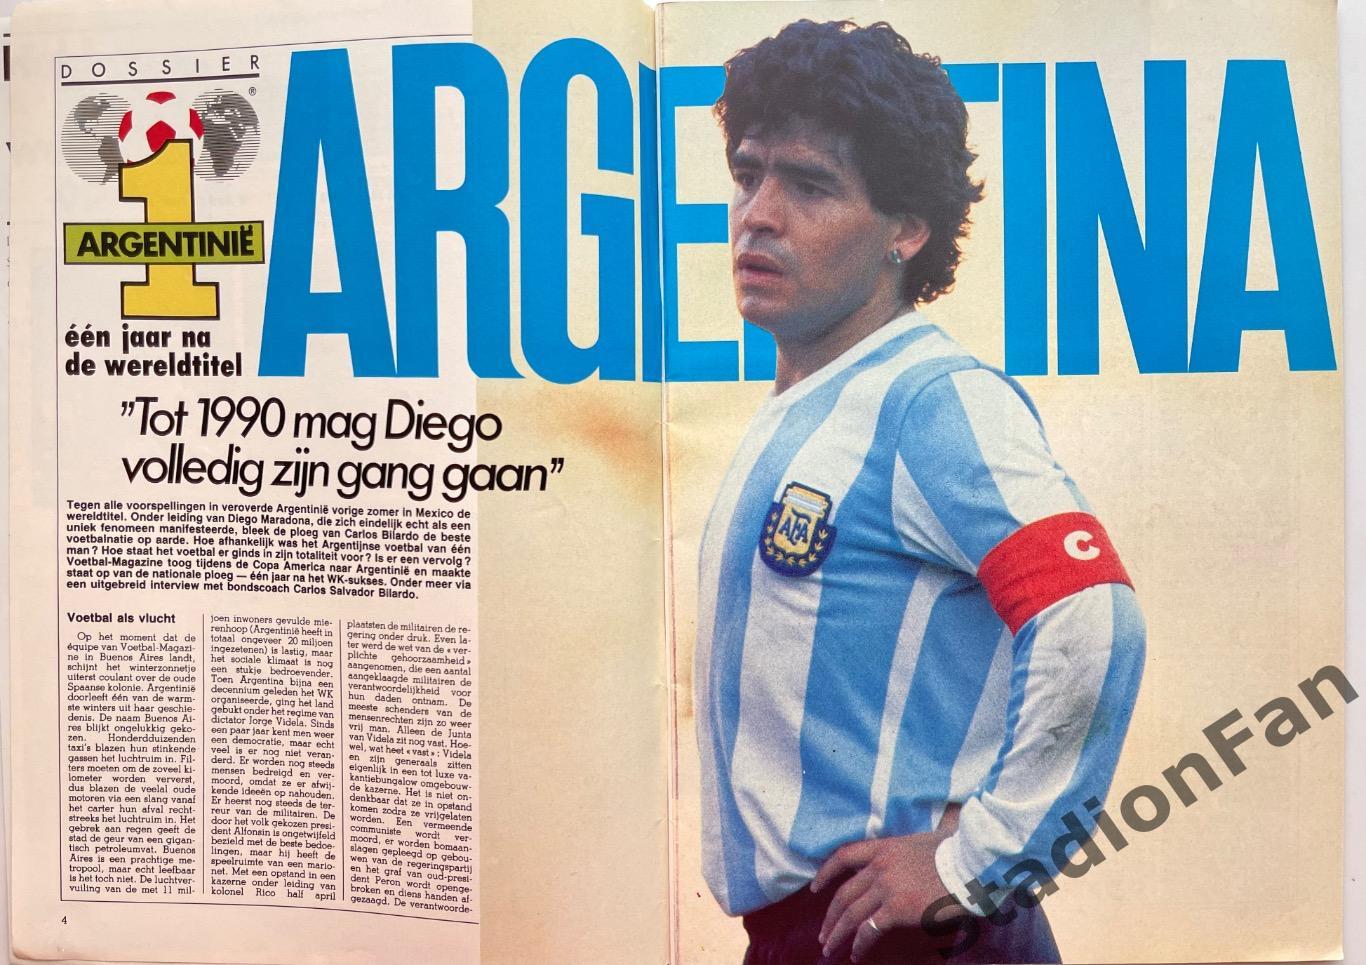 Журнал Voetbal - 1985 год. 2